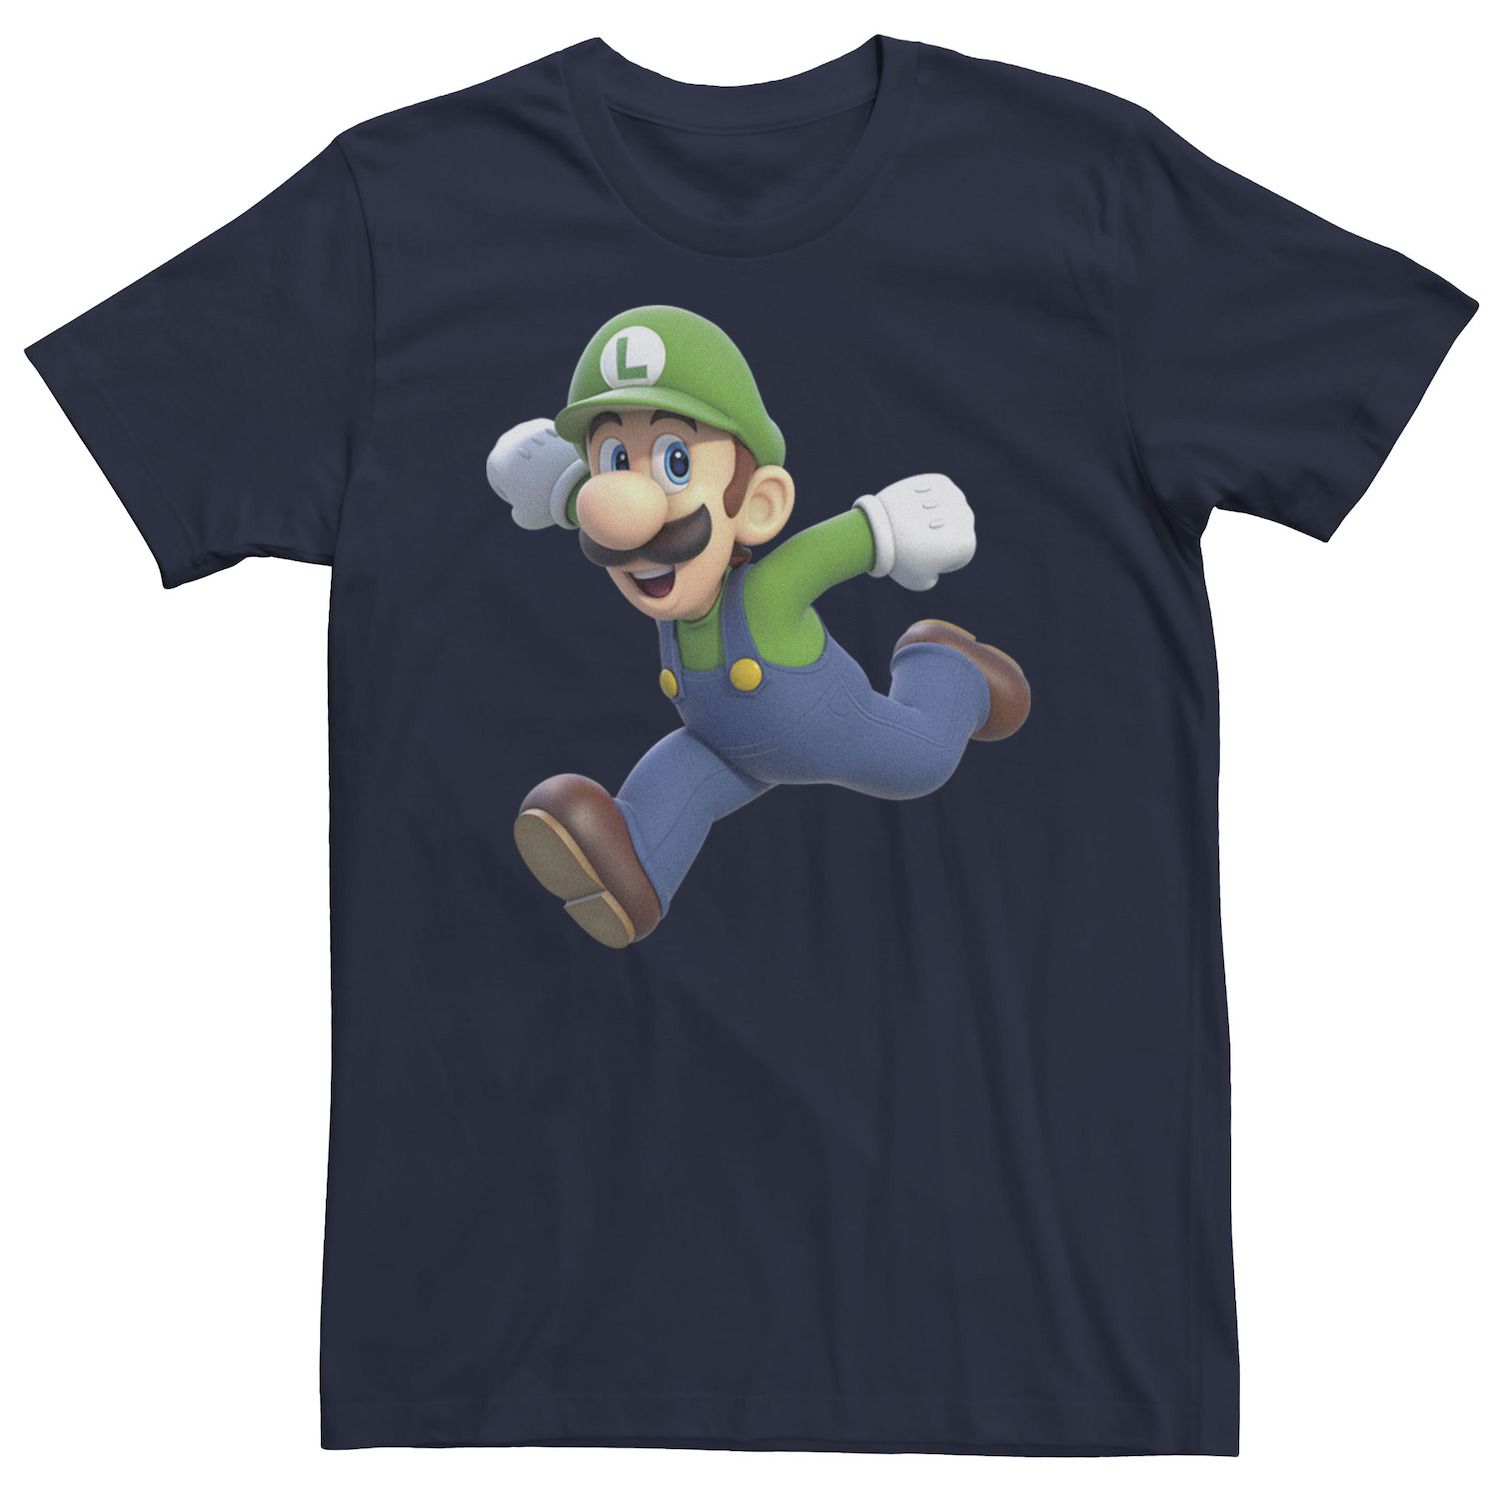 Image for Licensed Character Men's Nintendo Luigi Portrait Tee at Kohl's.